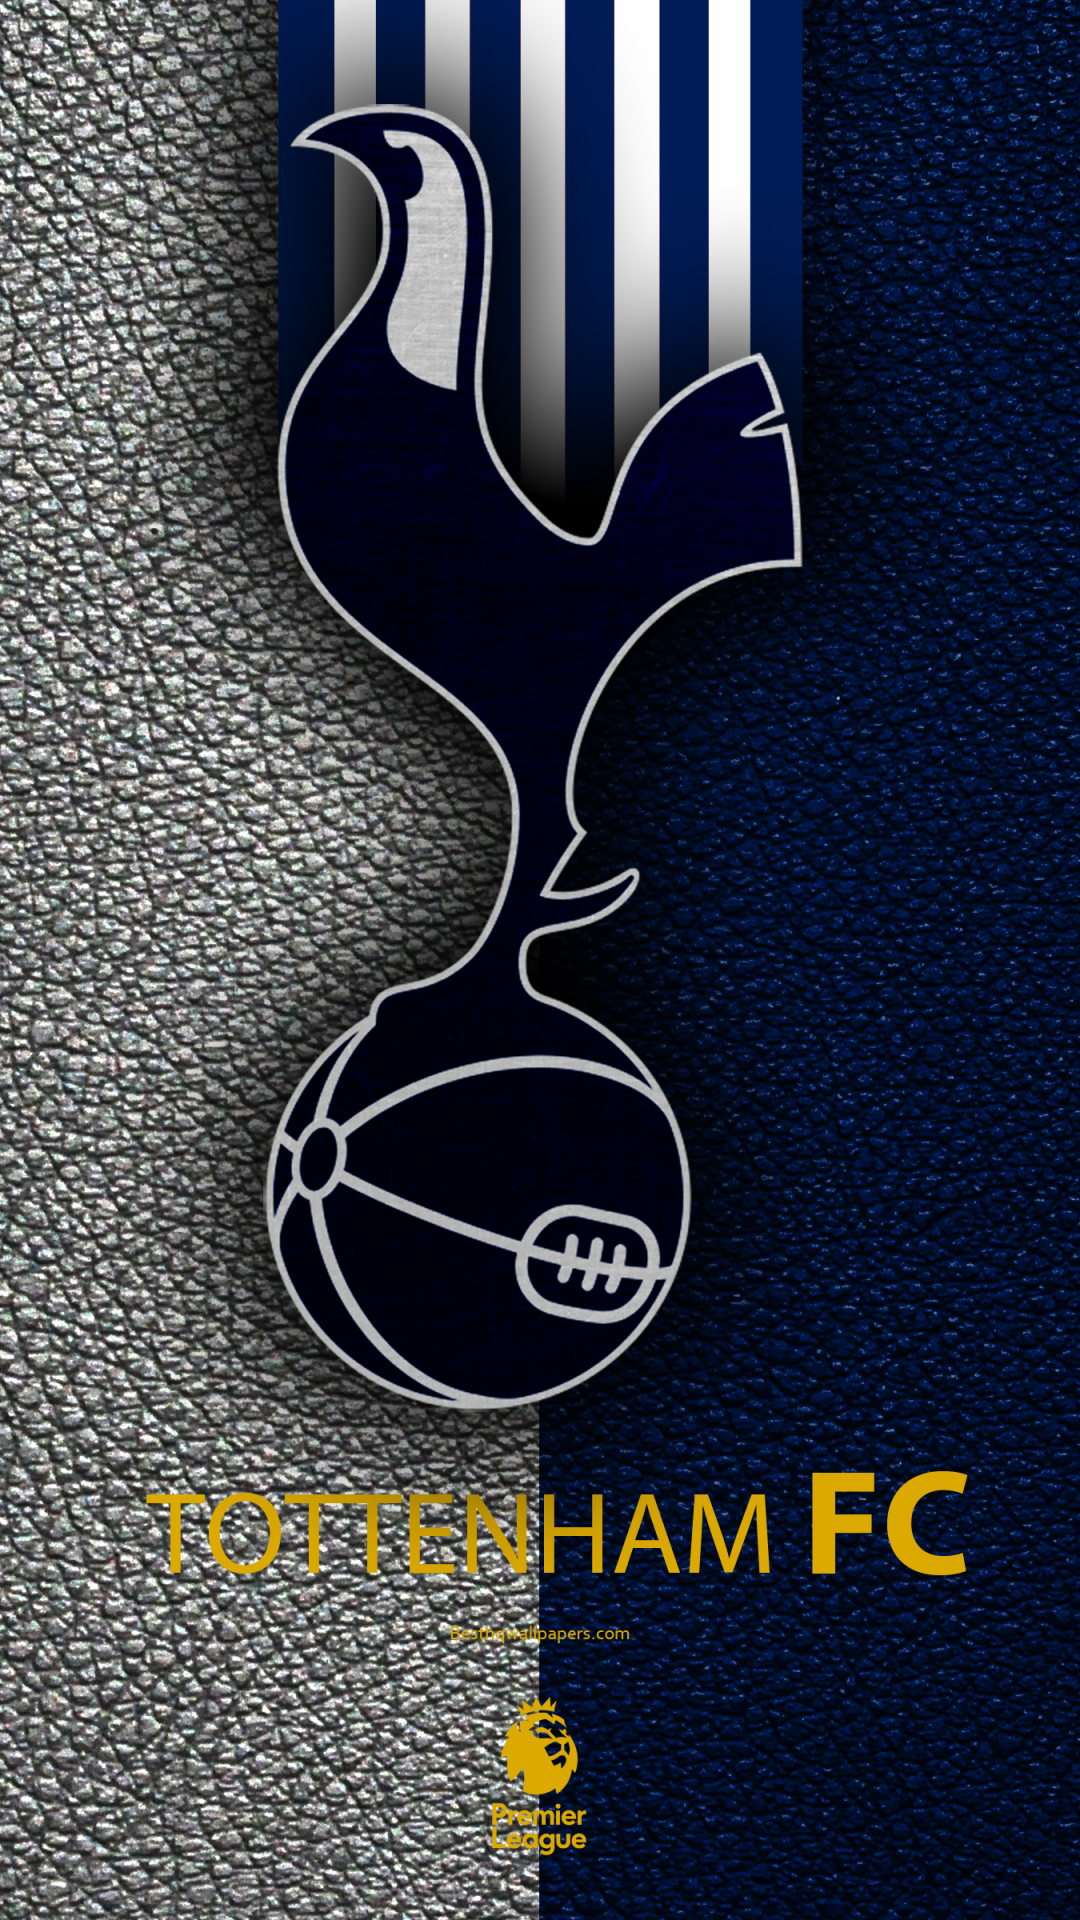 Tottenham Hotspur Wallpaper Android - 1080x1920 Wallpaper 